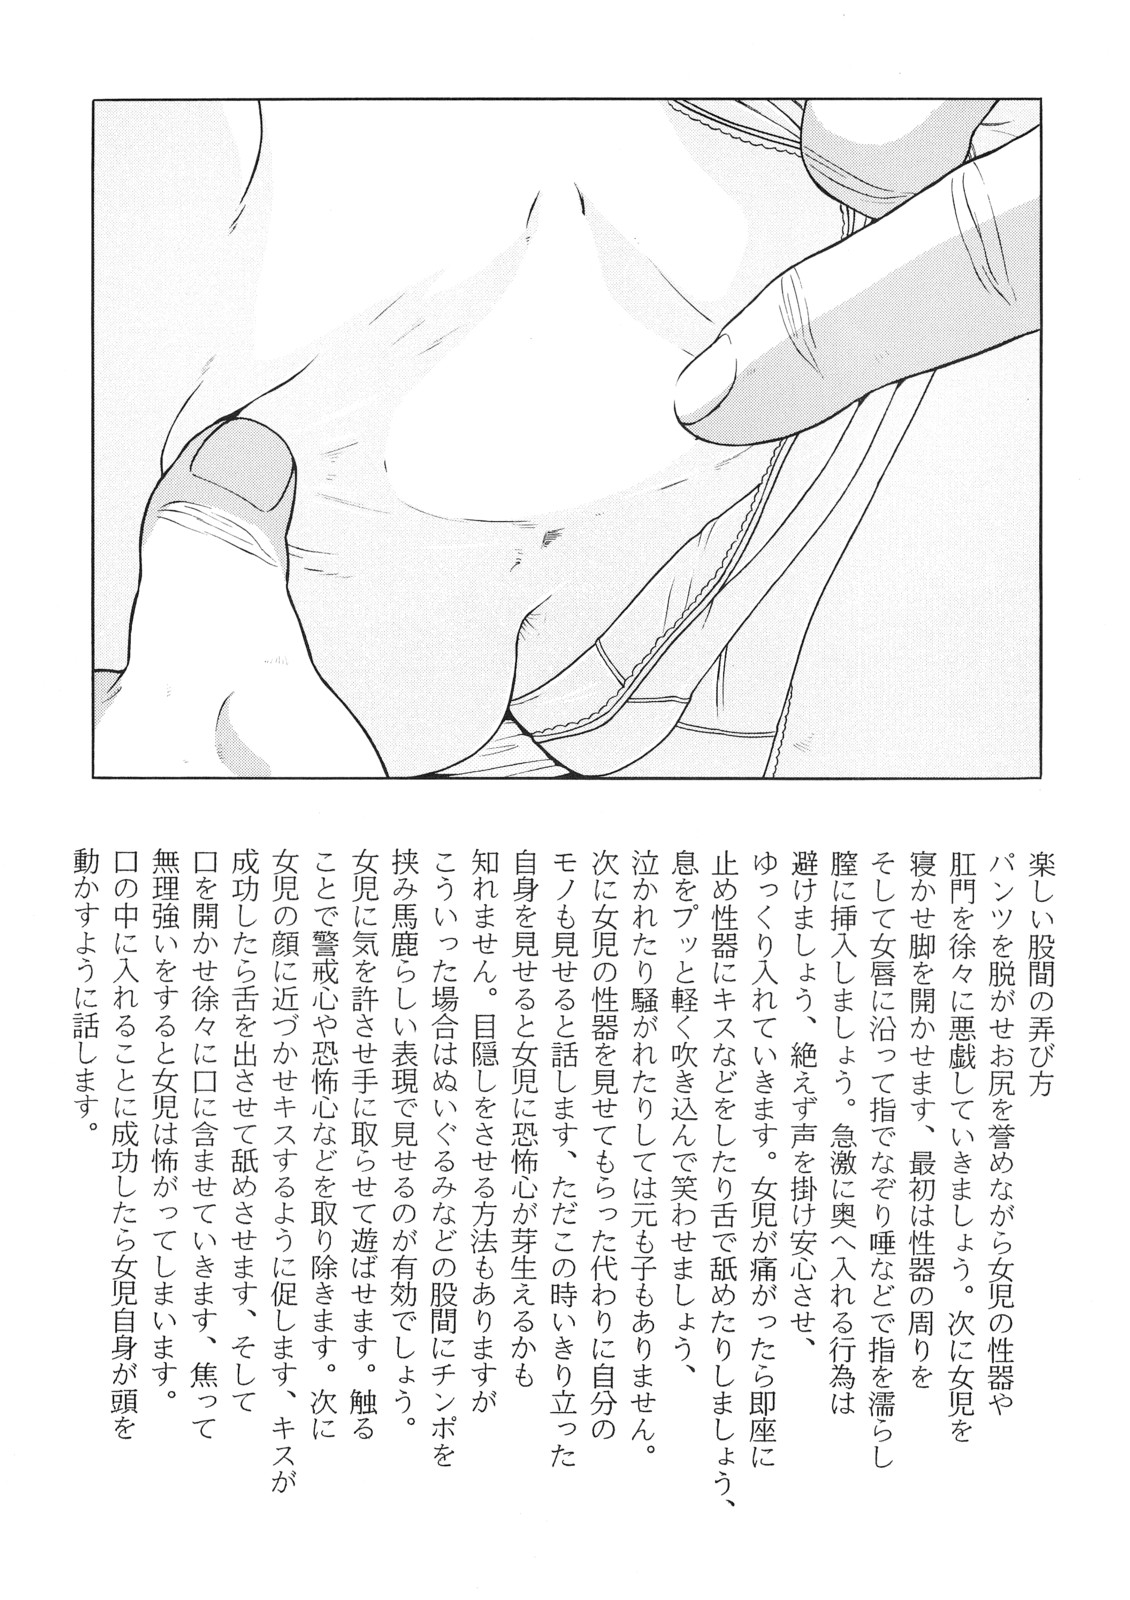 Read C Momonga Club Lewd Angels Hayashibara Hikari Kurata Ichiro Seiyuu Hentai Porns